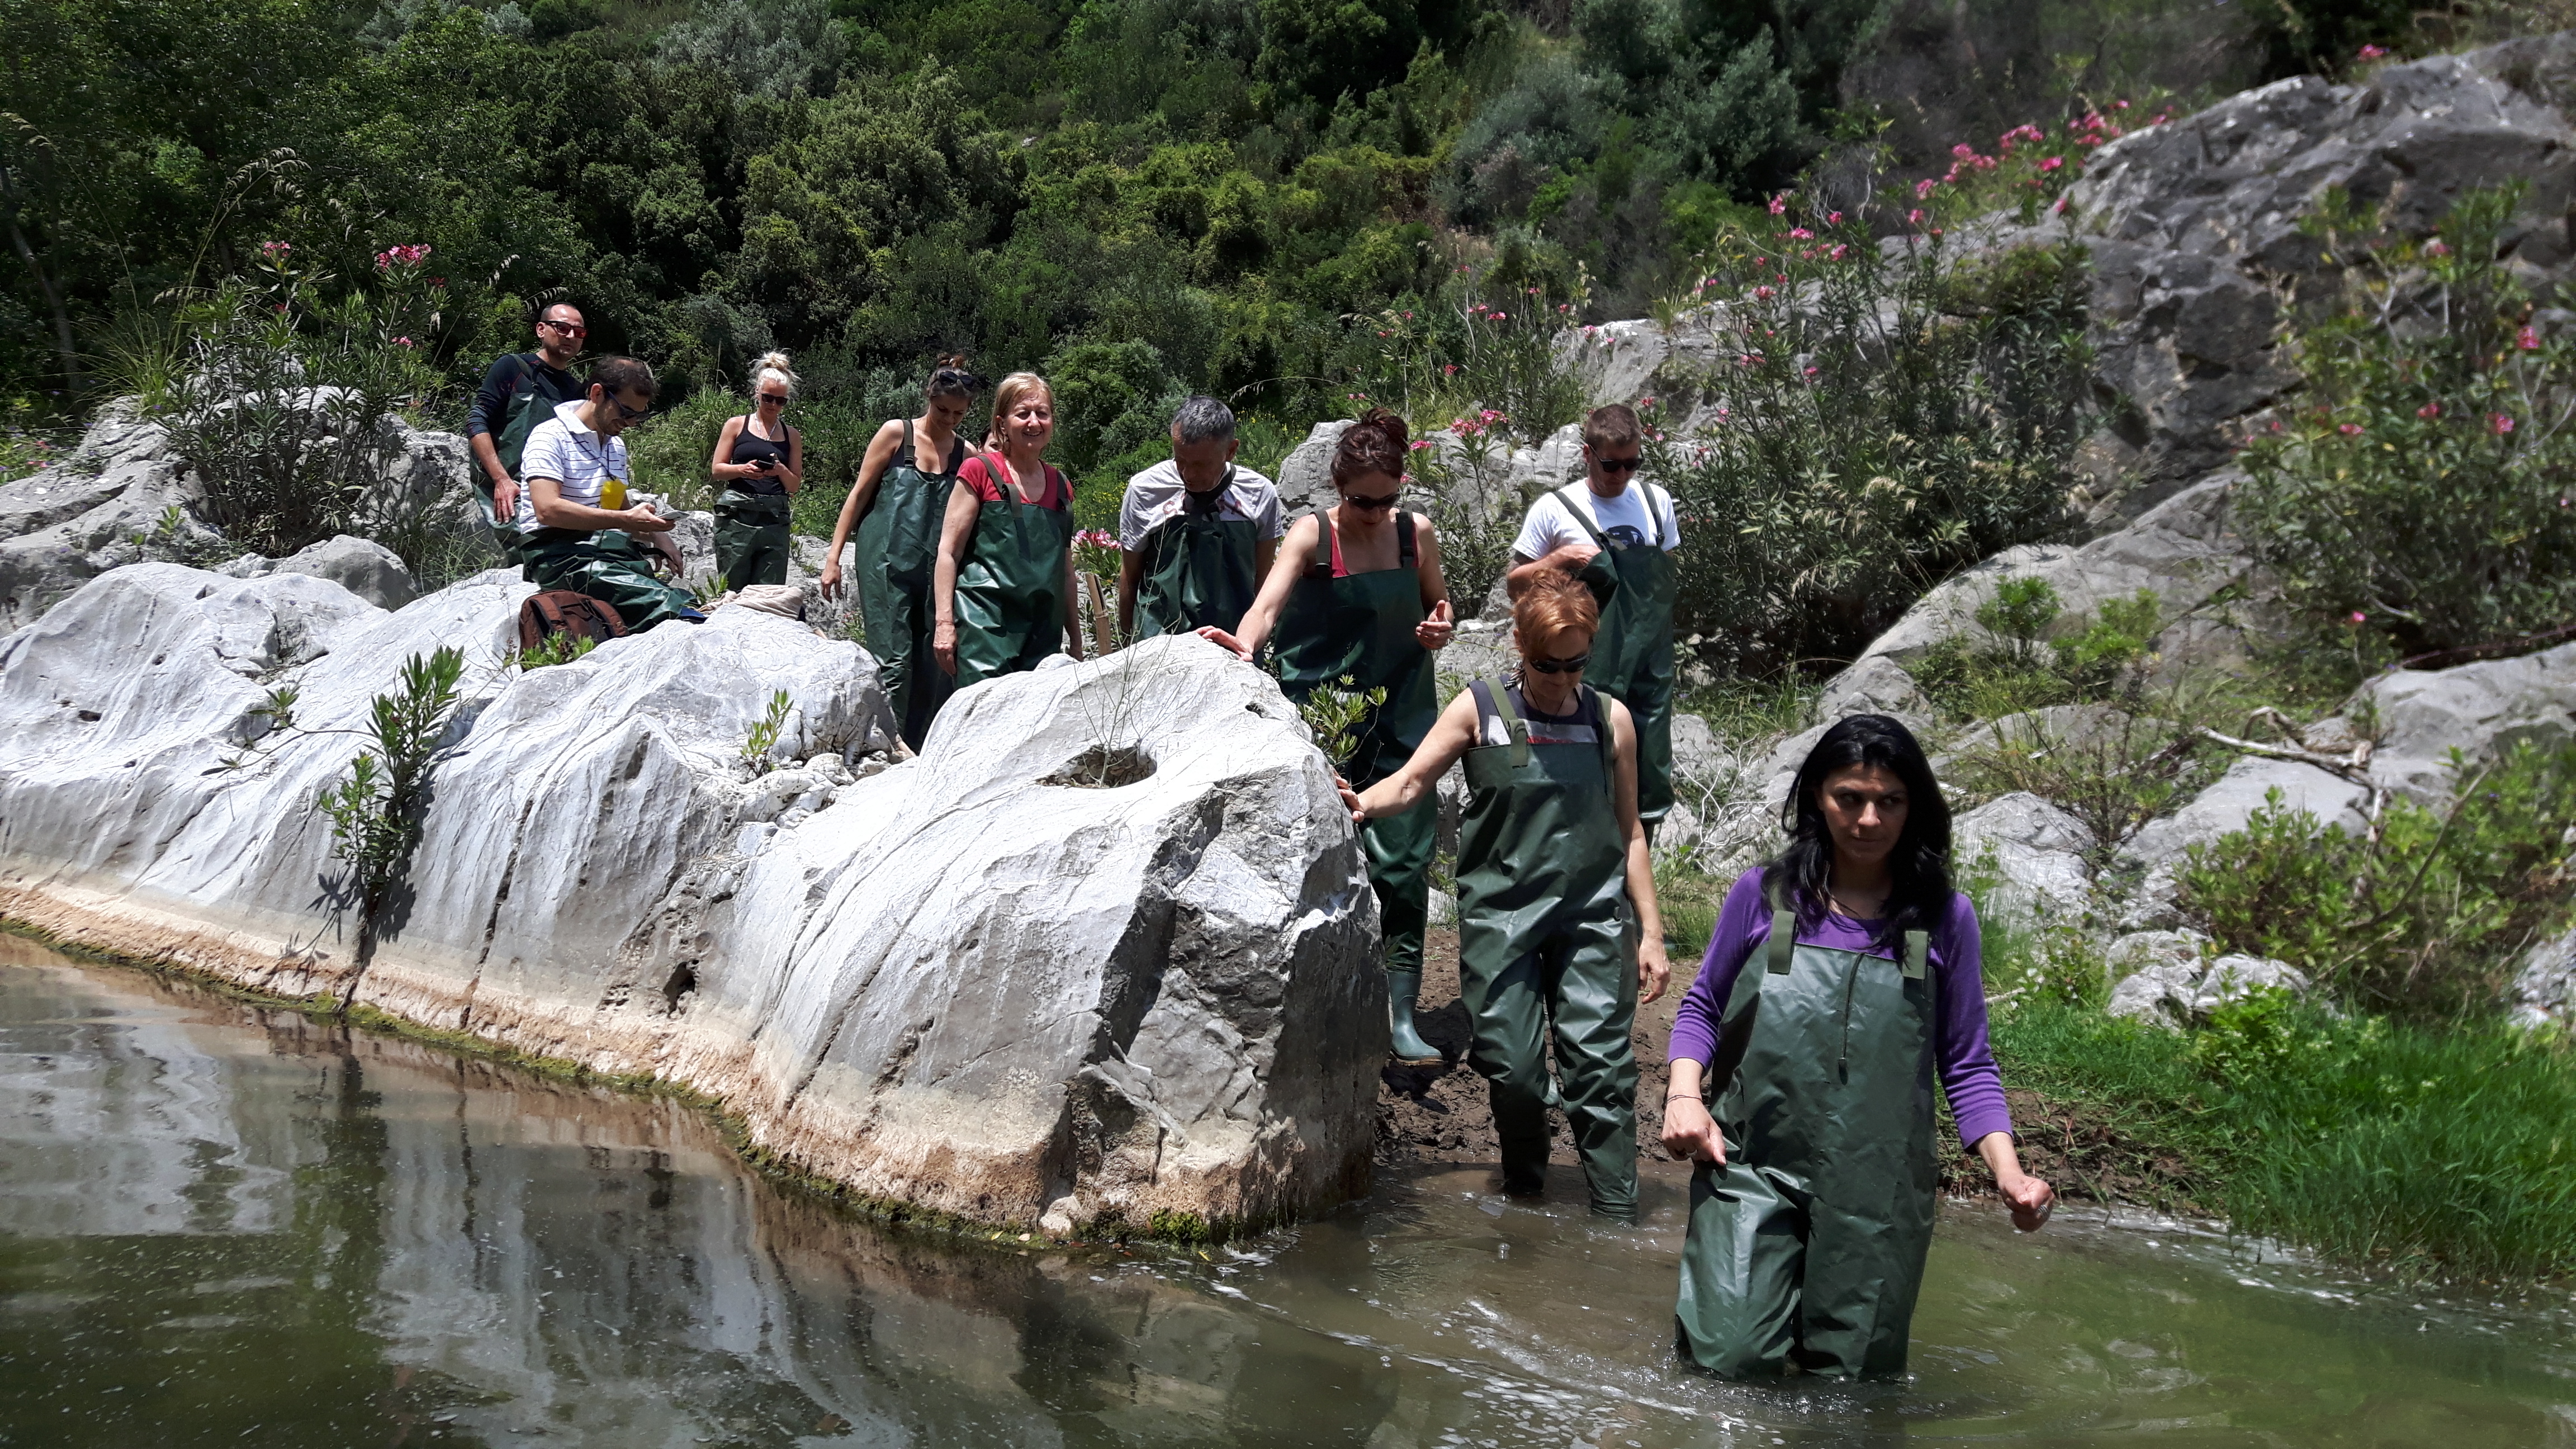 (Italiano) River Trail nel Parco delle Madonie. Camminata alla scoperta della flora e fauna fluviale